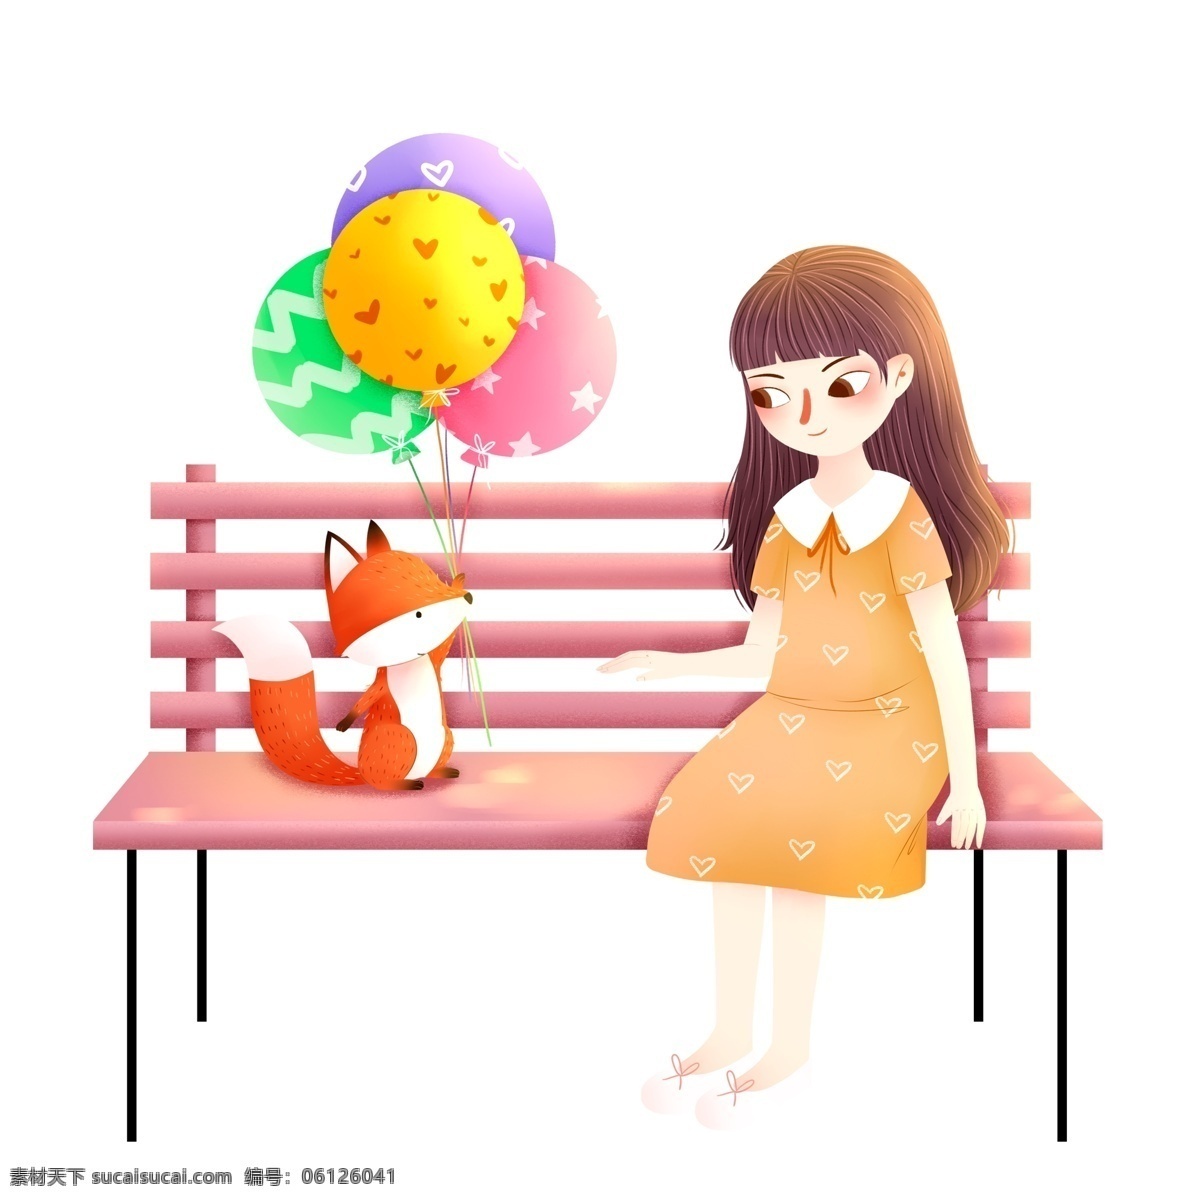 卡通 小 清新 坐在 长椅 上 女孩 狐狸 小清新 插画 人物 公园长椅 气球